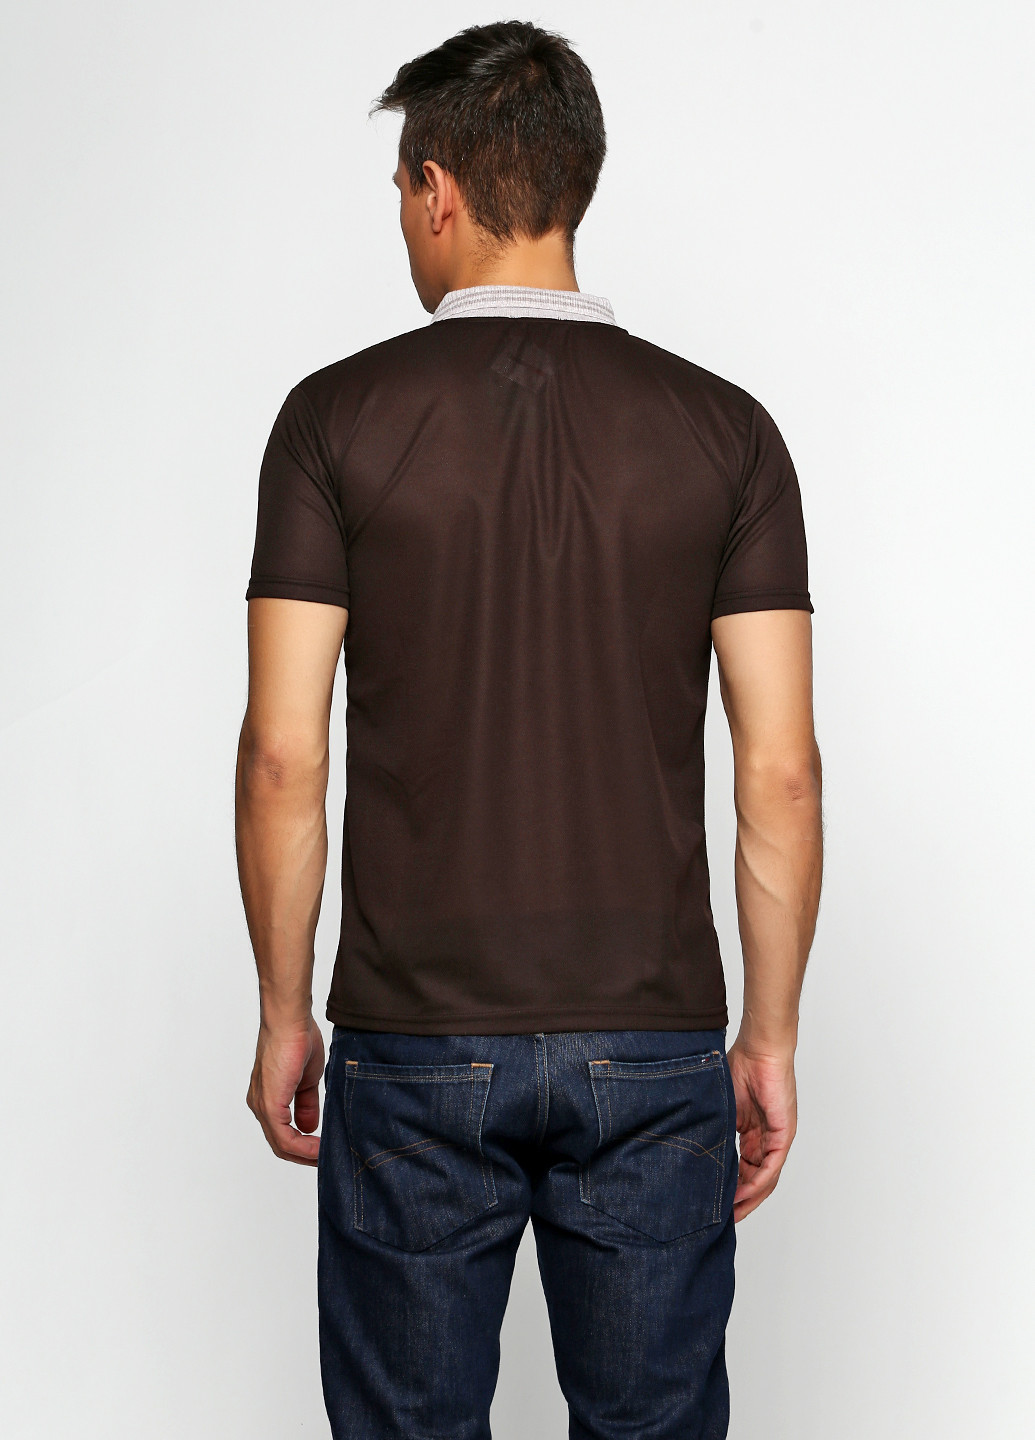 Темно-коричневая футболка-поло для мужчин Chiarotex однотонная